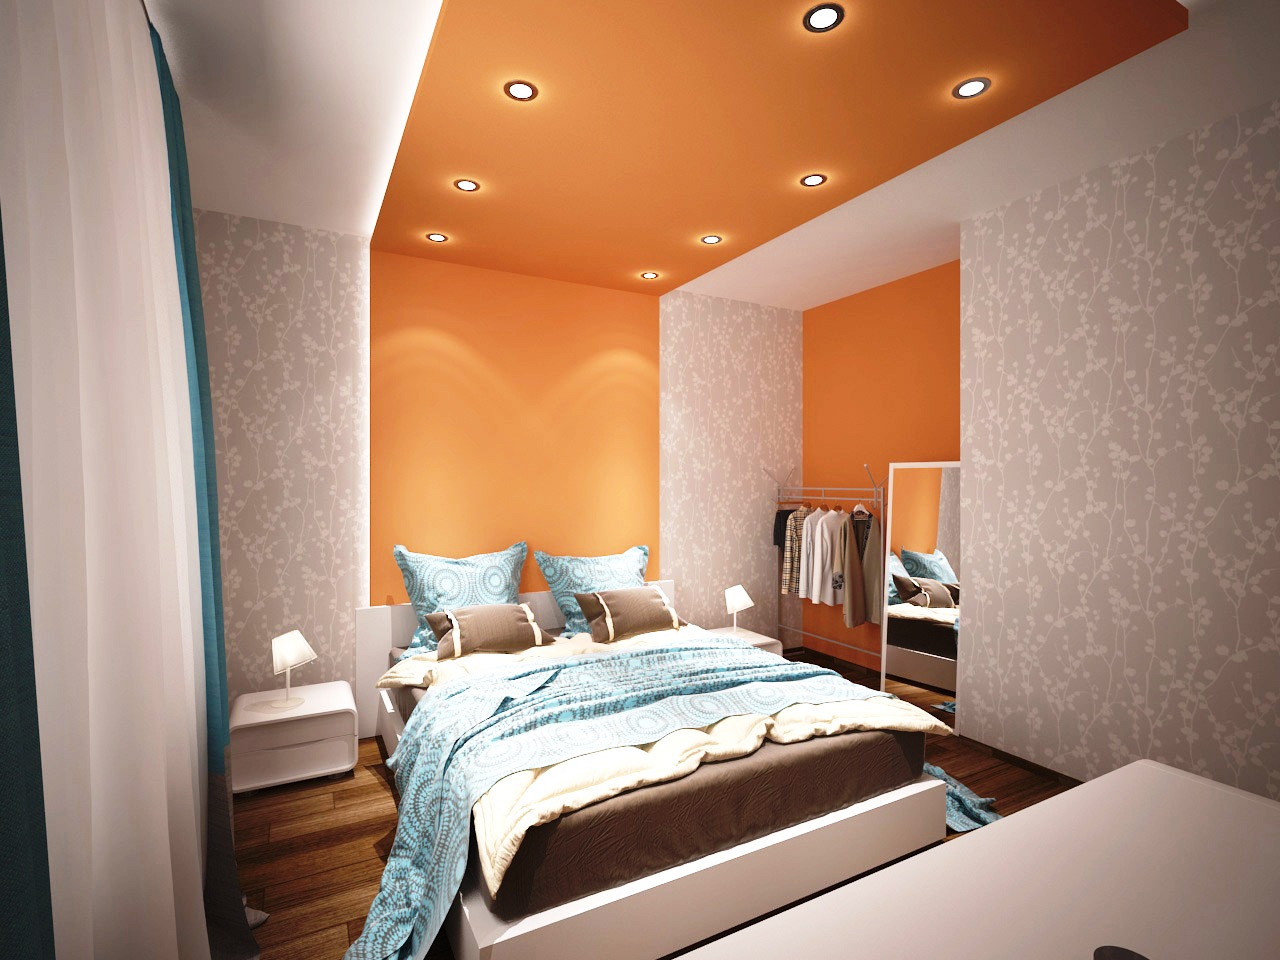 Λευκή-πορτοκαλί οροφή στην κρεβατοκάμαρα